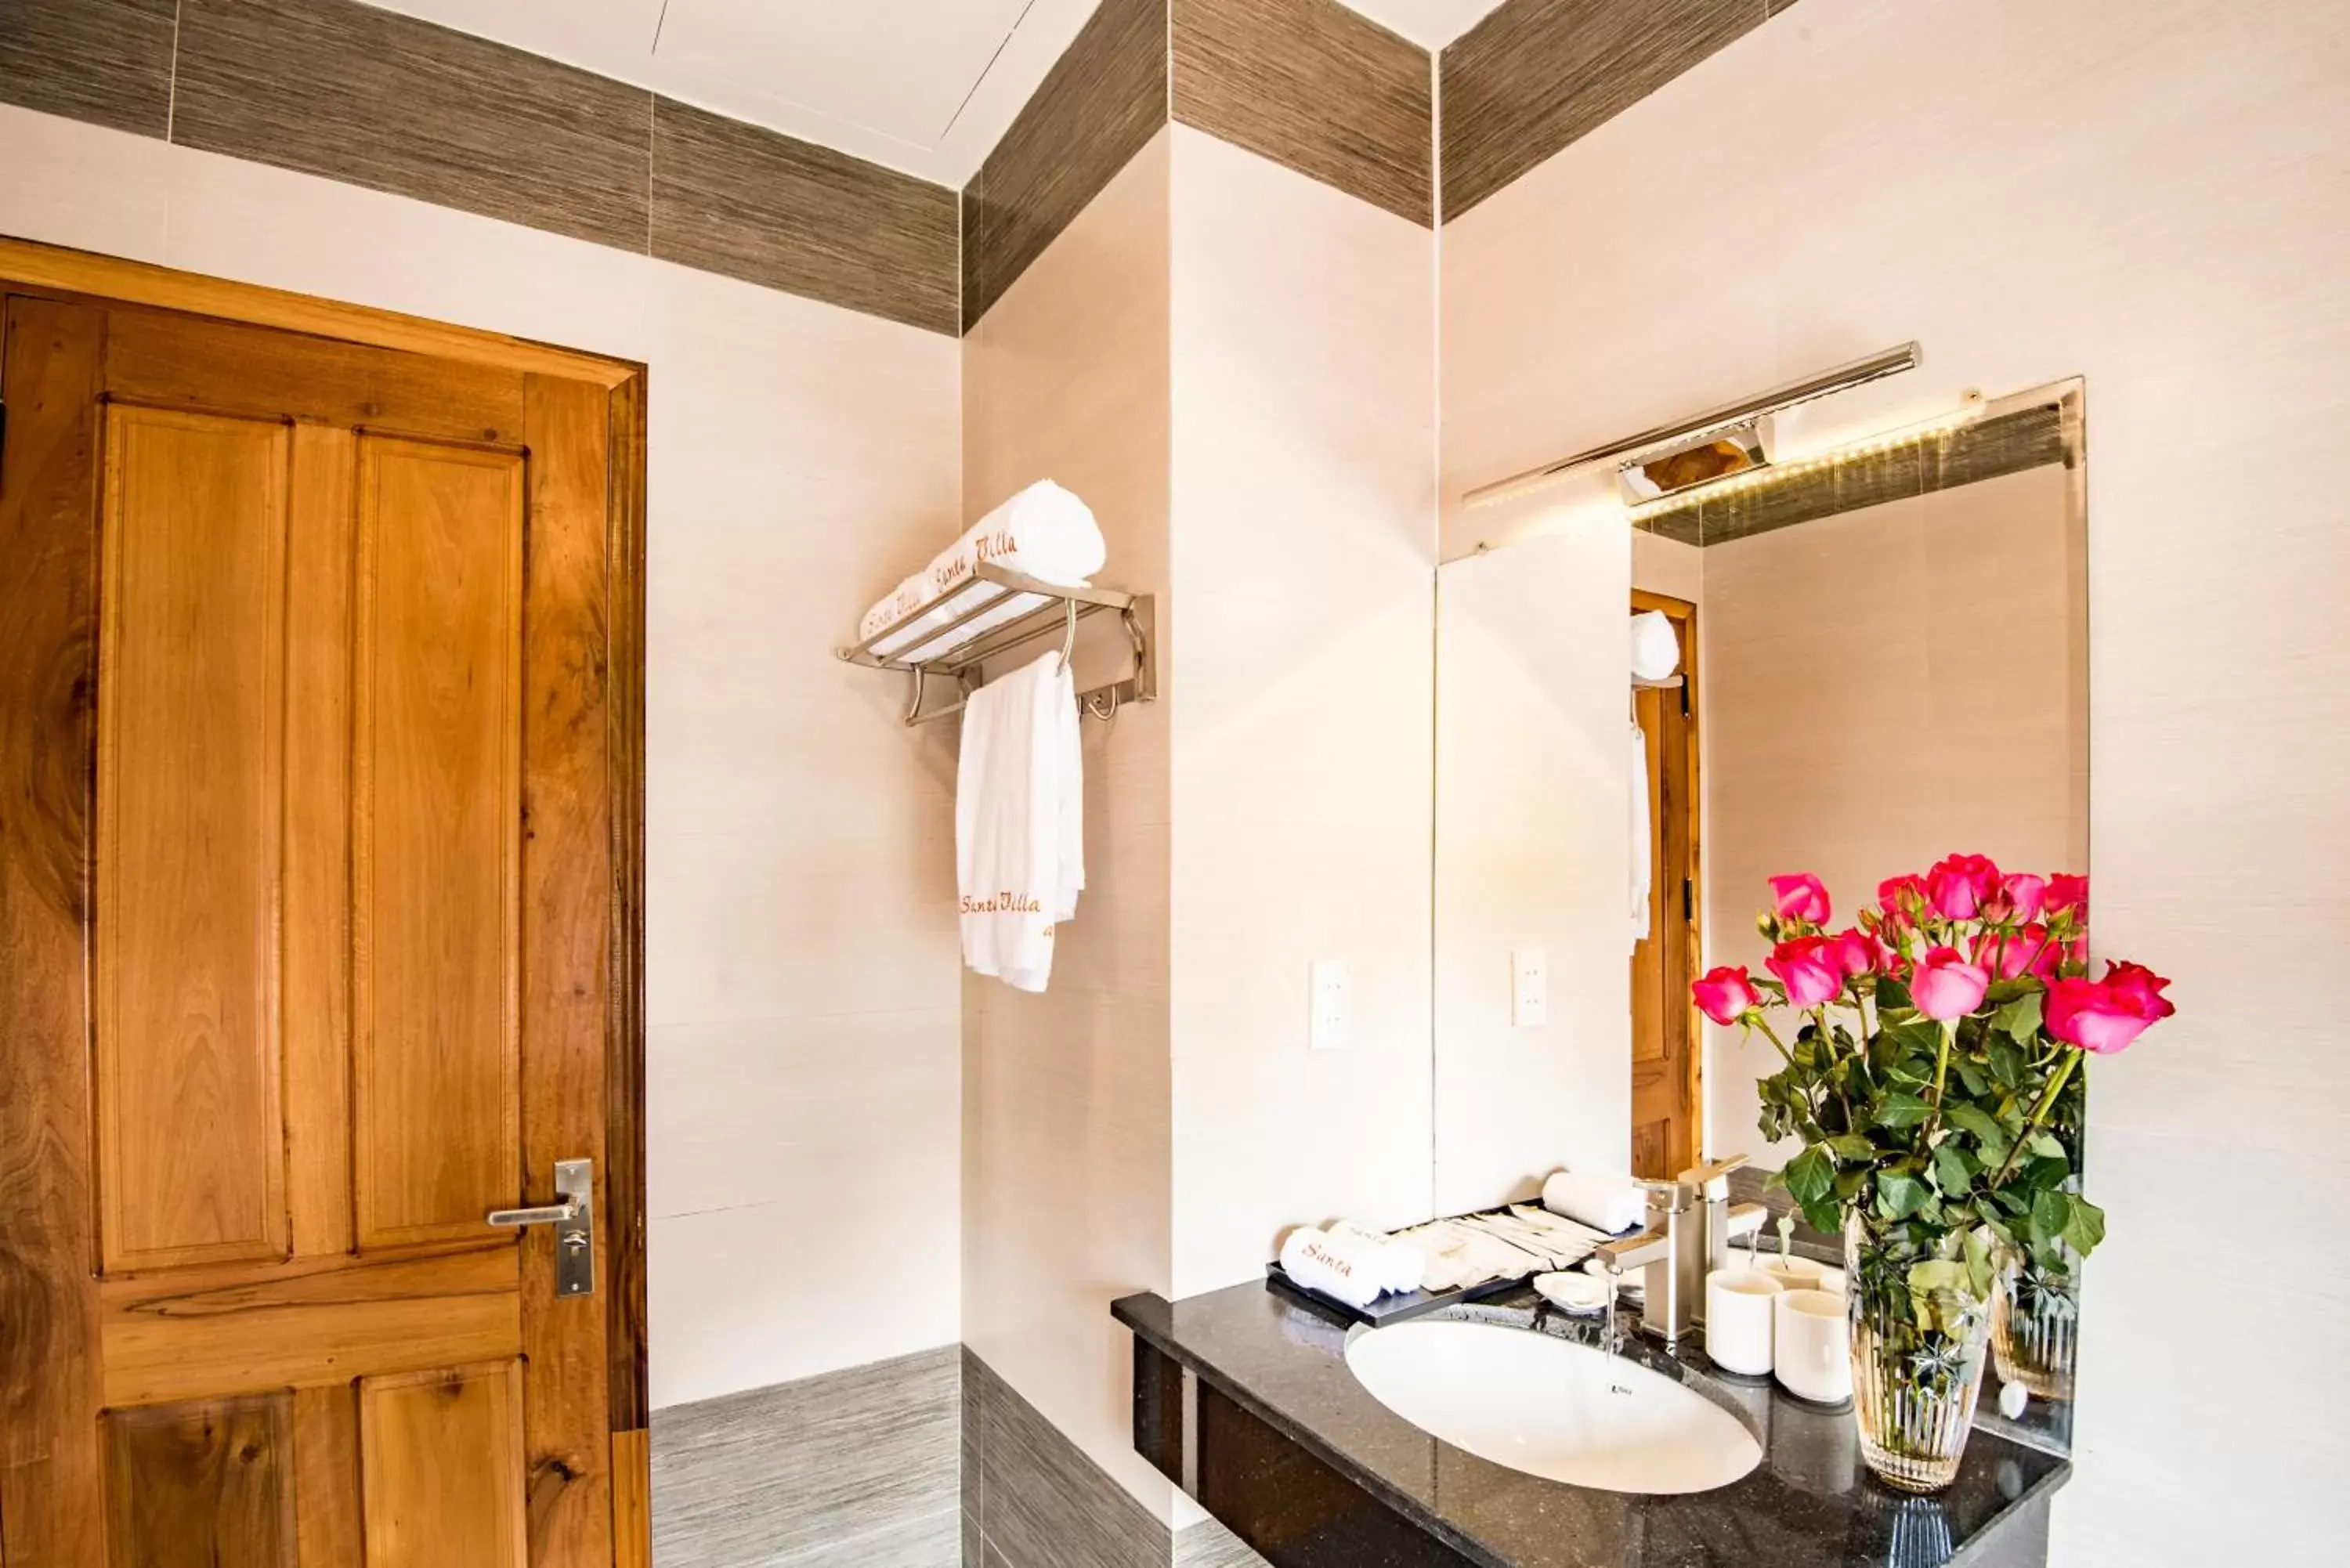 Bathroom in Santa Sea Villa